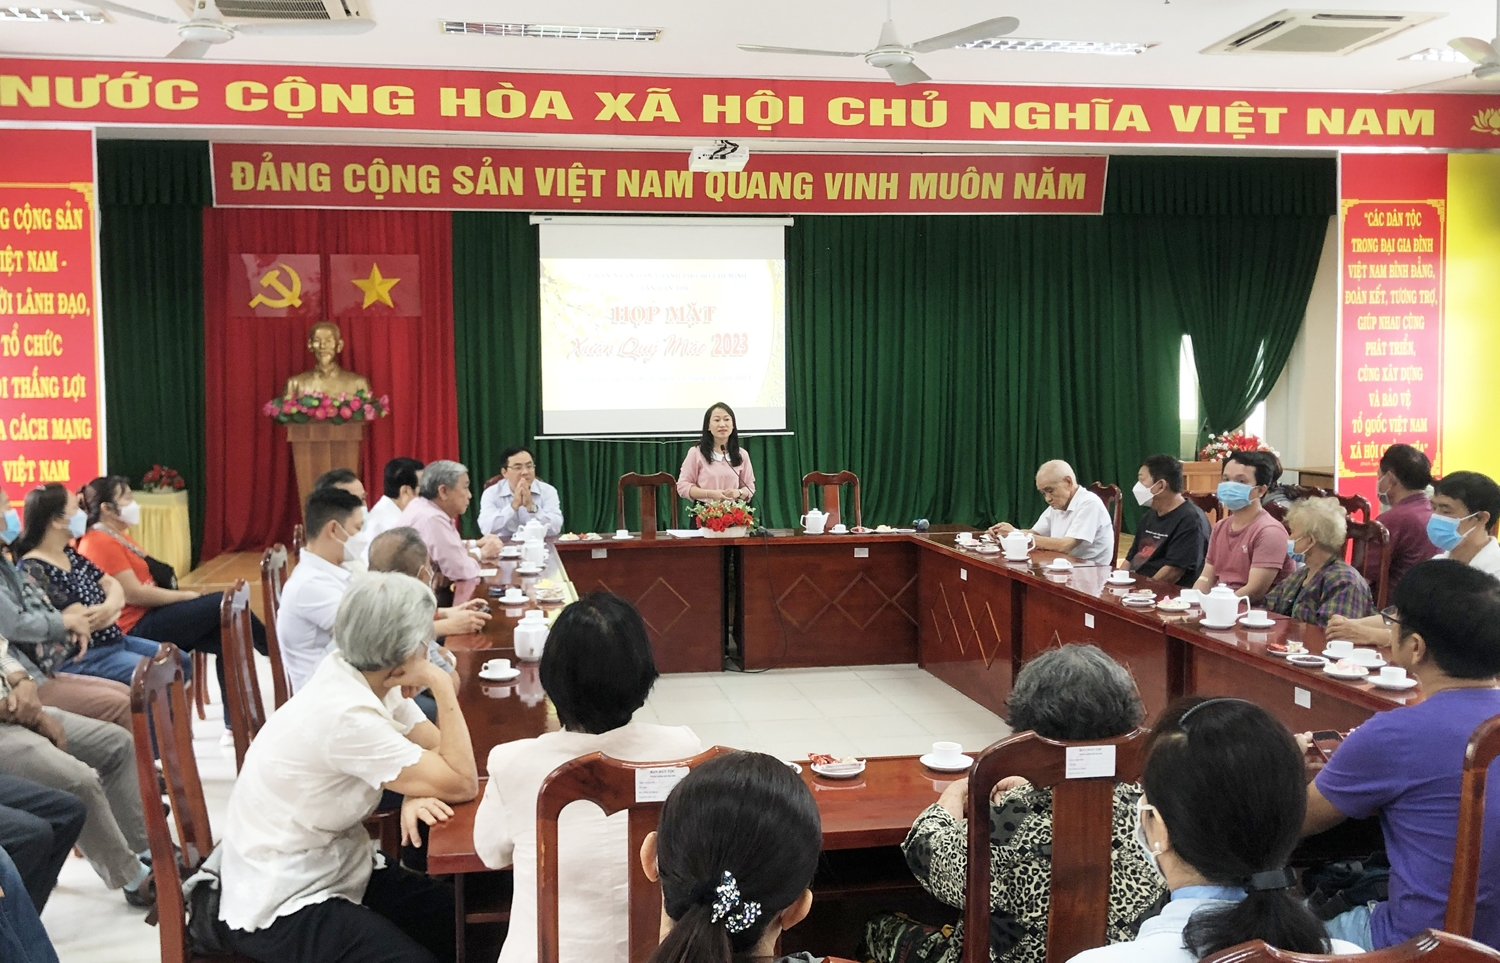 Bà Đặng Thị Tuyết Mai - Phó trưởng Ban Dân tộc Thành phố báo cáo về tình hình công tác dân tộc, những kết quả đạt được trong năm 2022 với các đại biểu